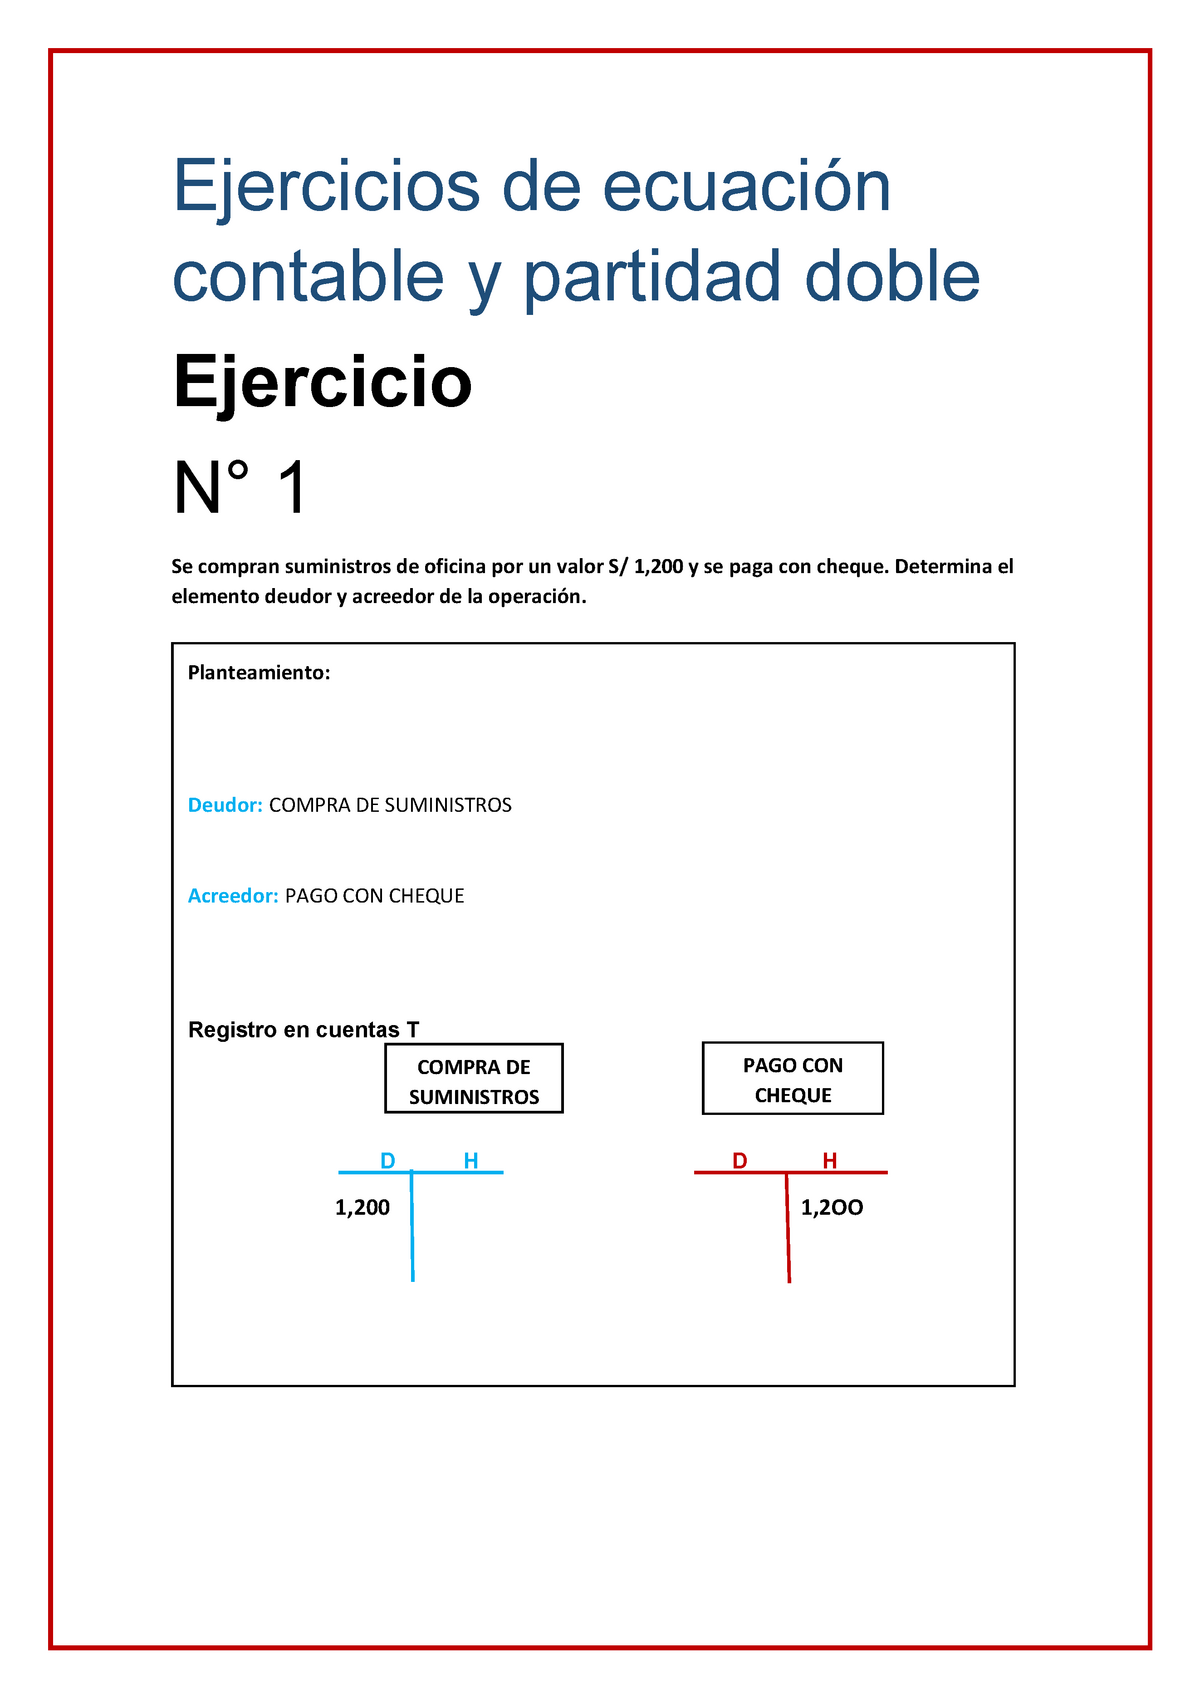 Ejercicios De Ecuación Contable Y Partida Doble Ejercicios De Ecuación Contable Y Partidad 9634